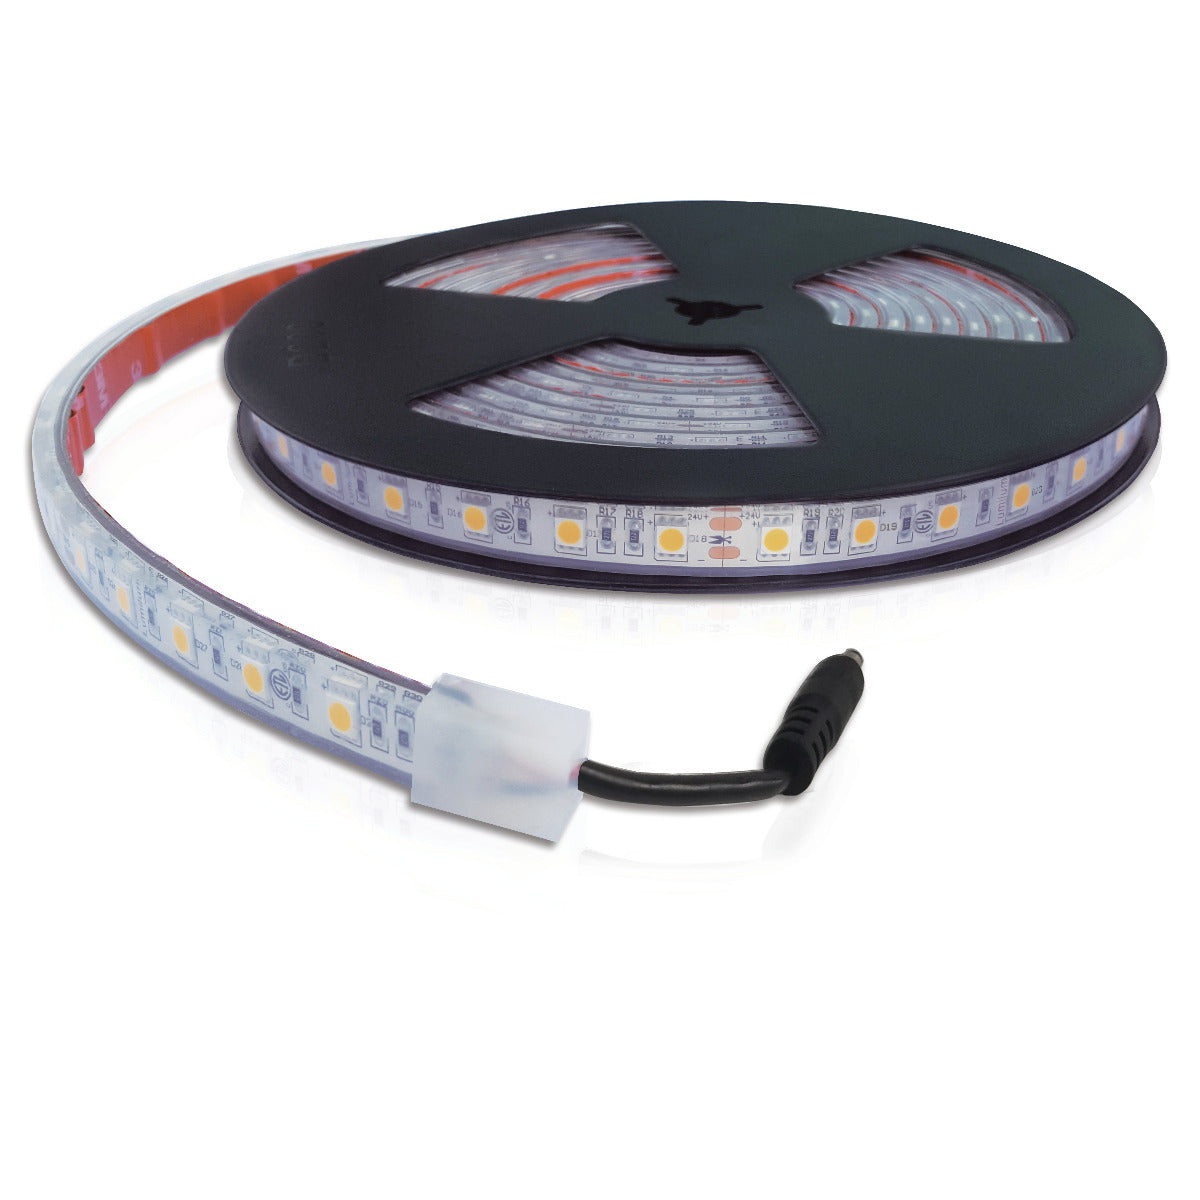 IP67 Waterproof LED Strip Lights - 24V - RGB Color Changing